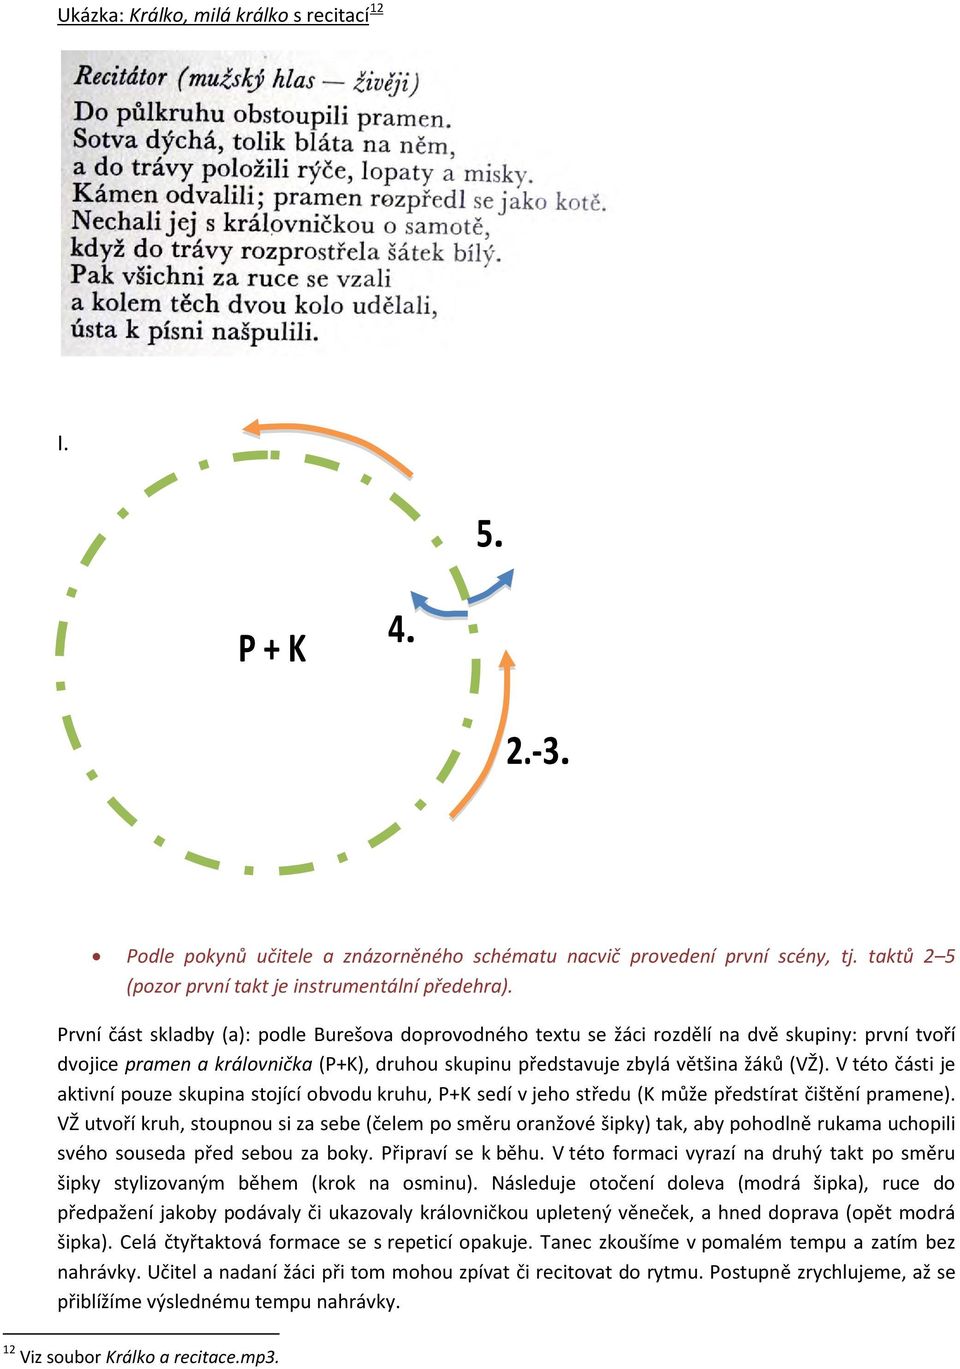 V této části je aktivní pouze skupina stojící obvodu kruhu, P+K sedí v jeho středu (K může předstírat čištění pramene).